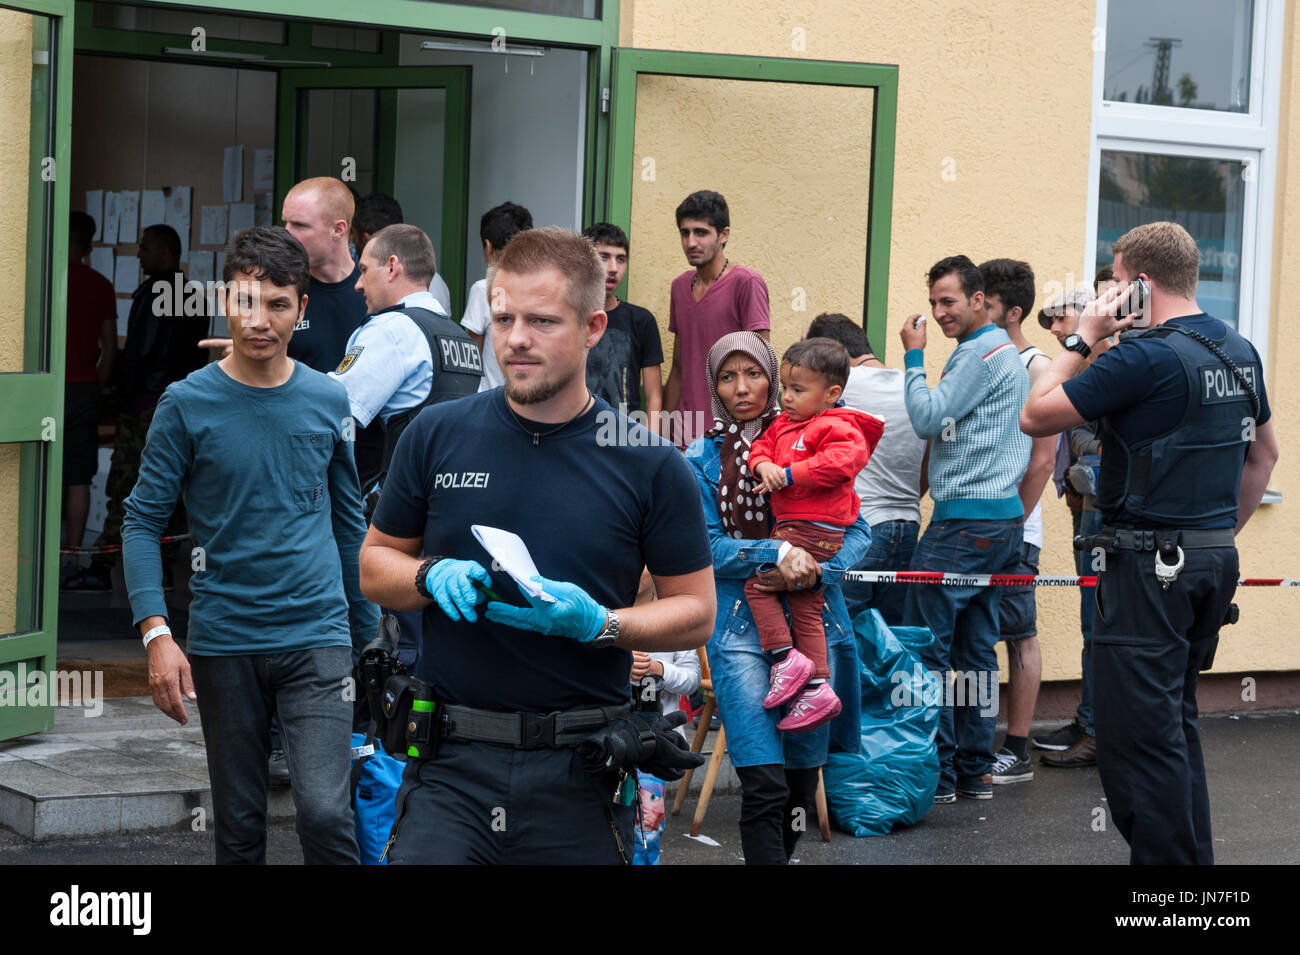 Passau, Germania - 2 Agosto 2015: i rifugiati in attesa di registrazione per lo status di rifugiato in un affollato migranti centro di registrazione in Passau, Germania meridionale, Foto Stock